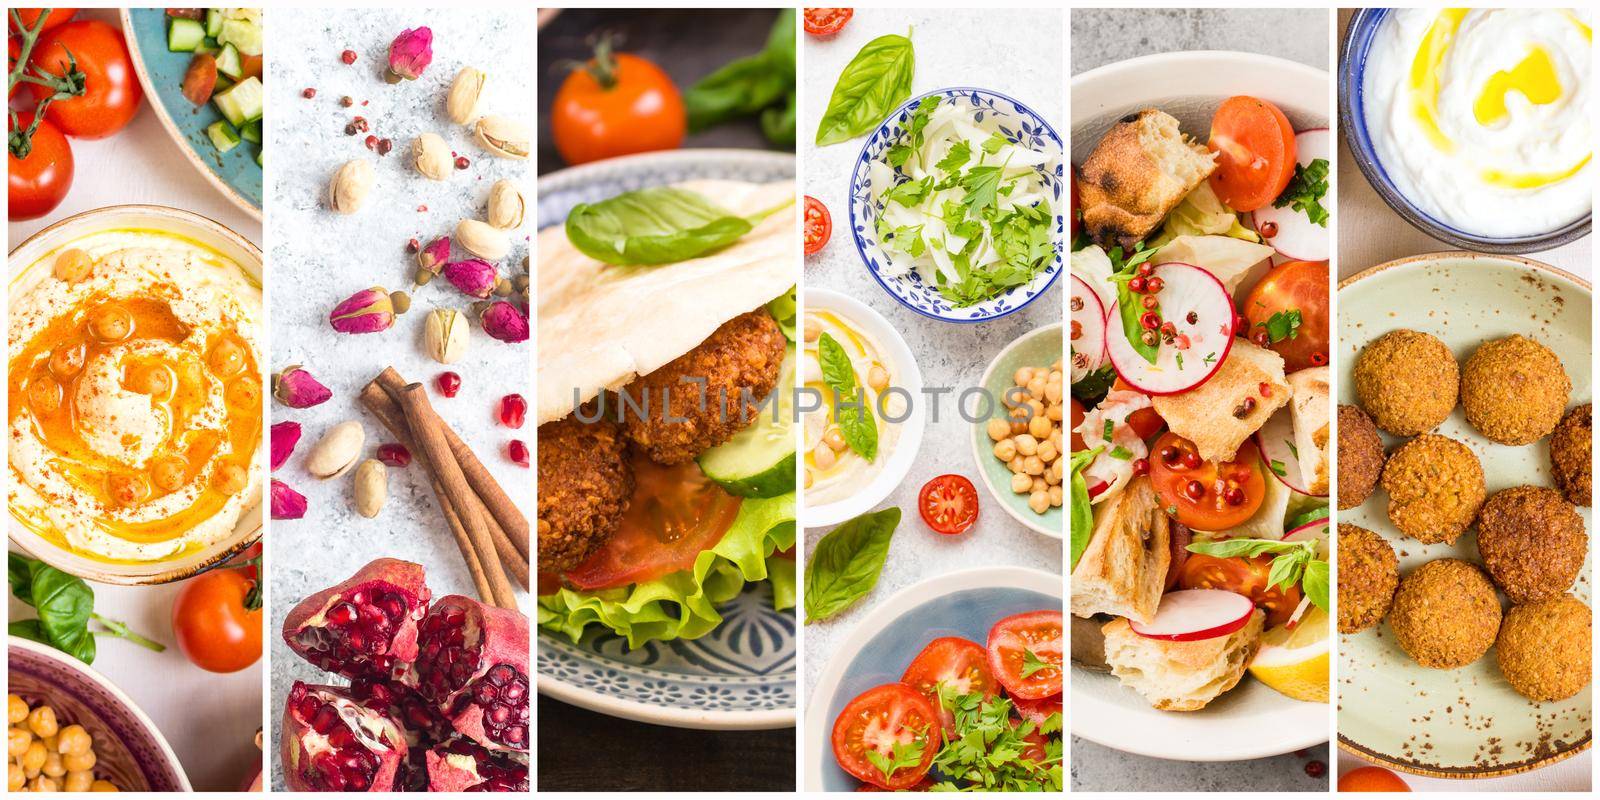 Arab food collage by its_al_dente